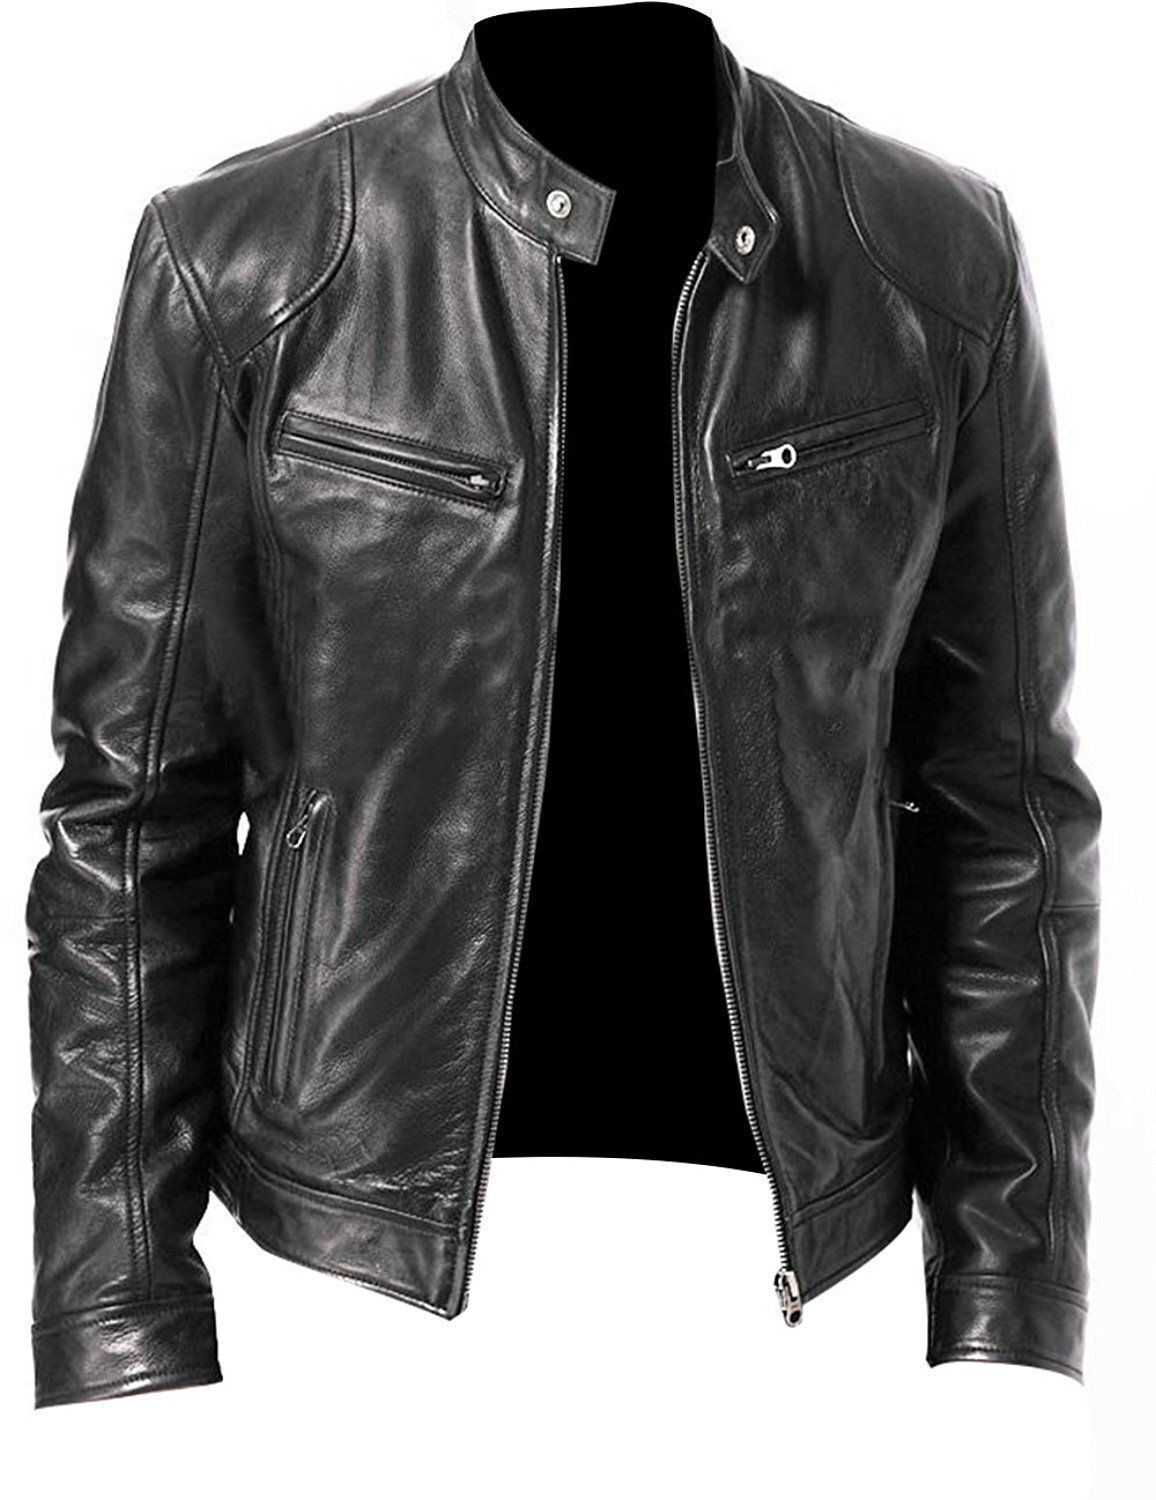 cafe racer leather jacket for men black cafe racer jacket motorcycle leather jacket soft sheepskin leather jacket mens biker leather jackets gift for men 